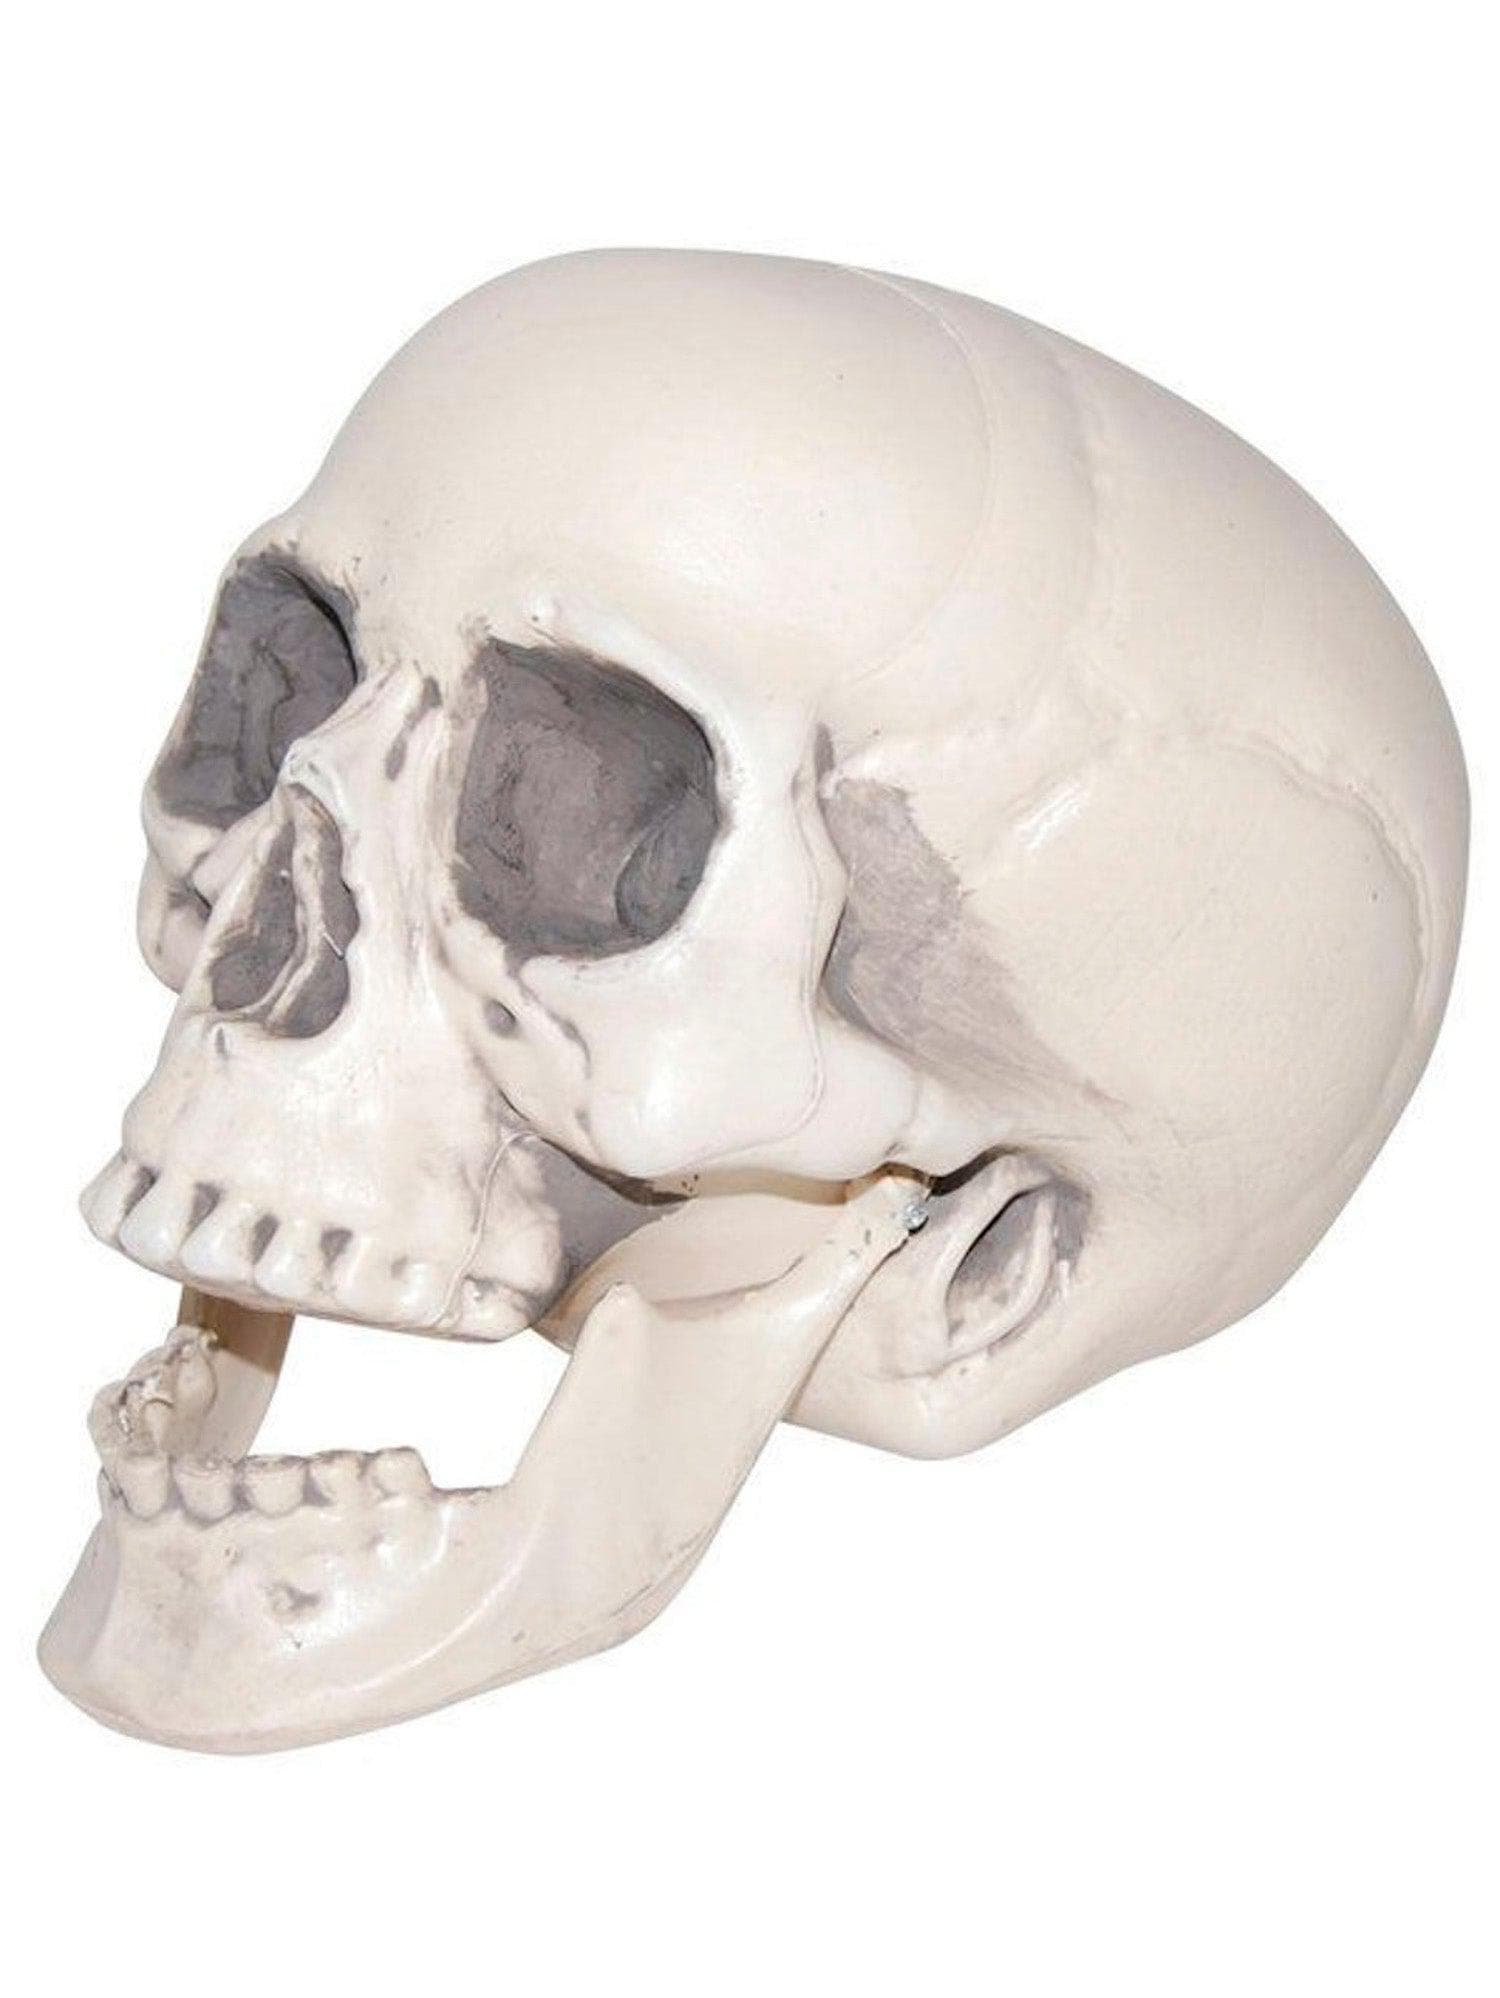 8 Inch Realistic Plastic Skull Prop - costumes.com